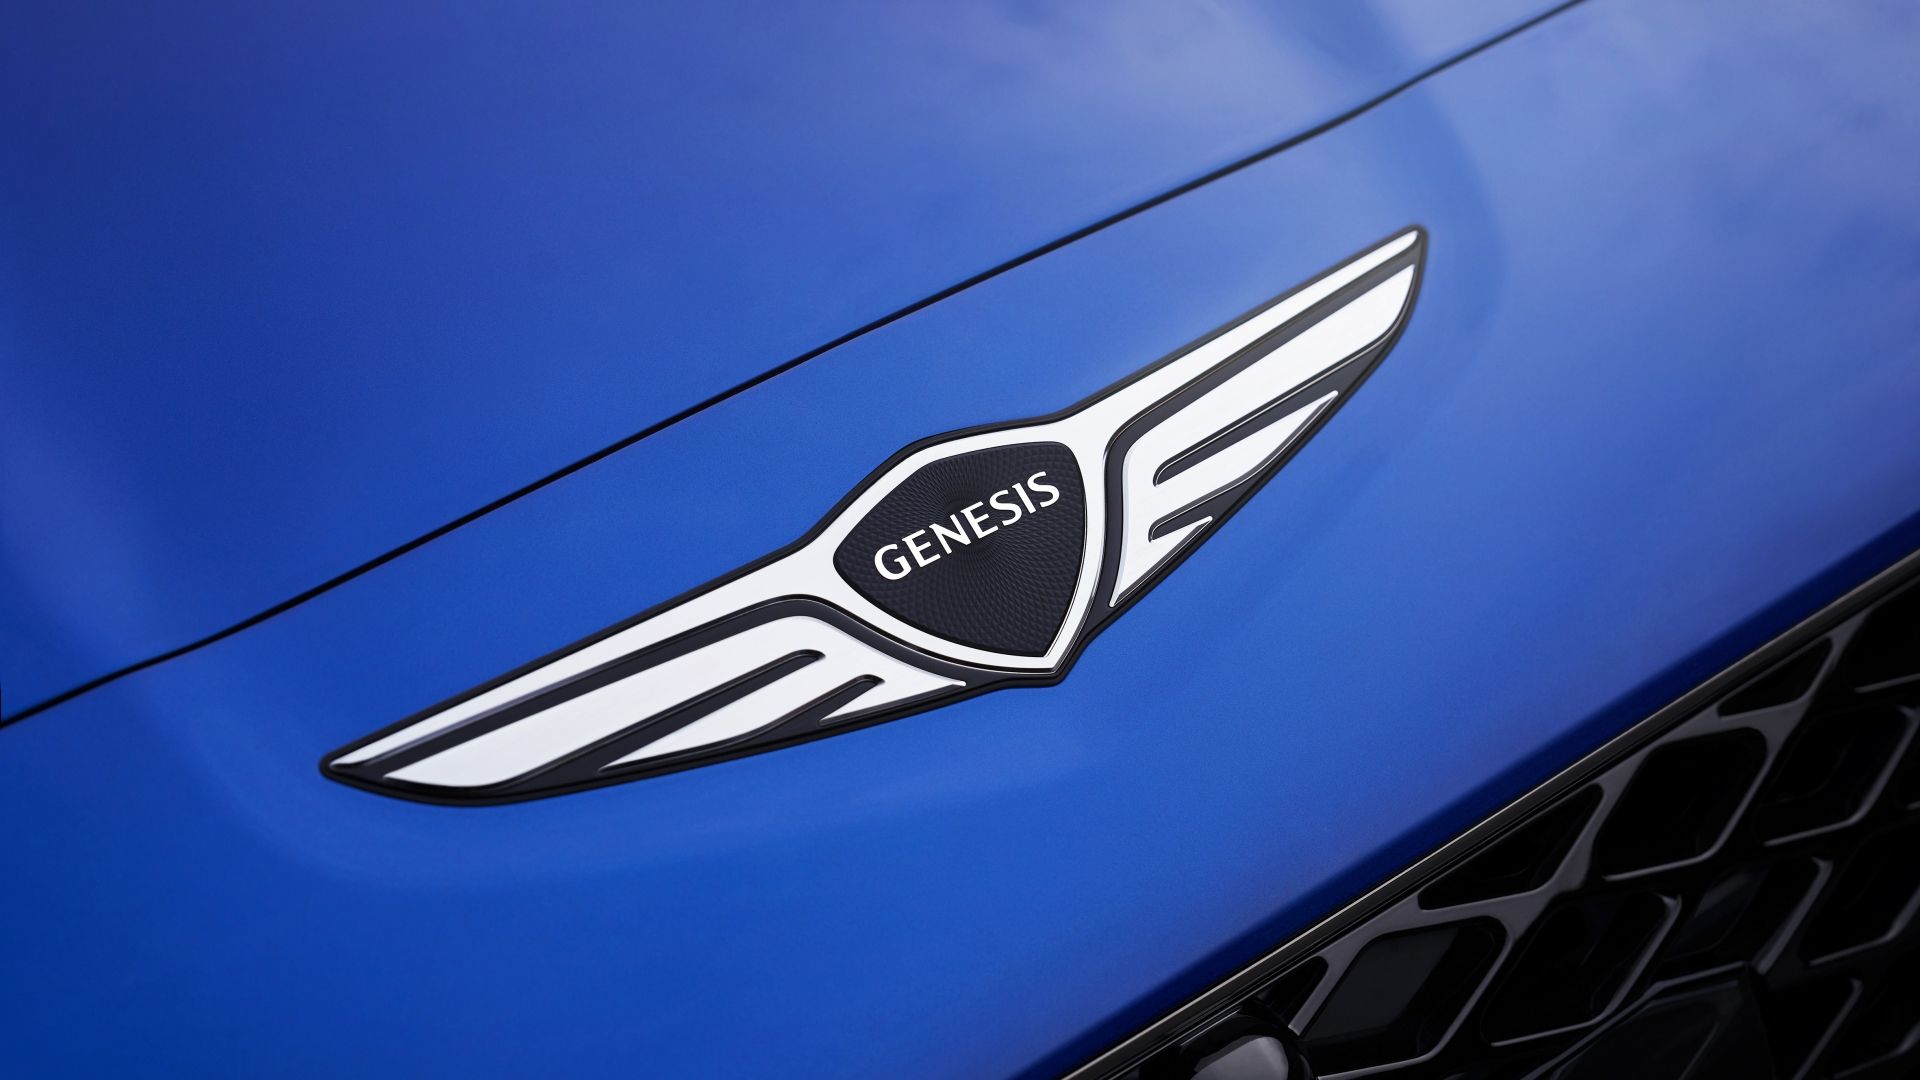 Genesis Badge On a blue Genesis G70 sedan